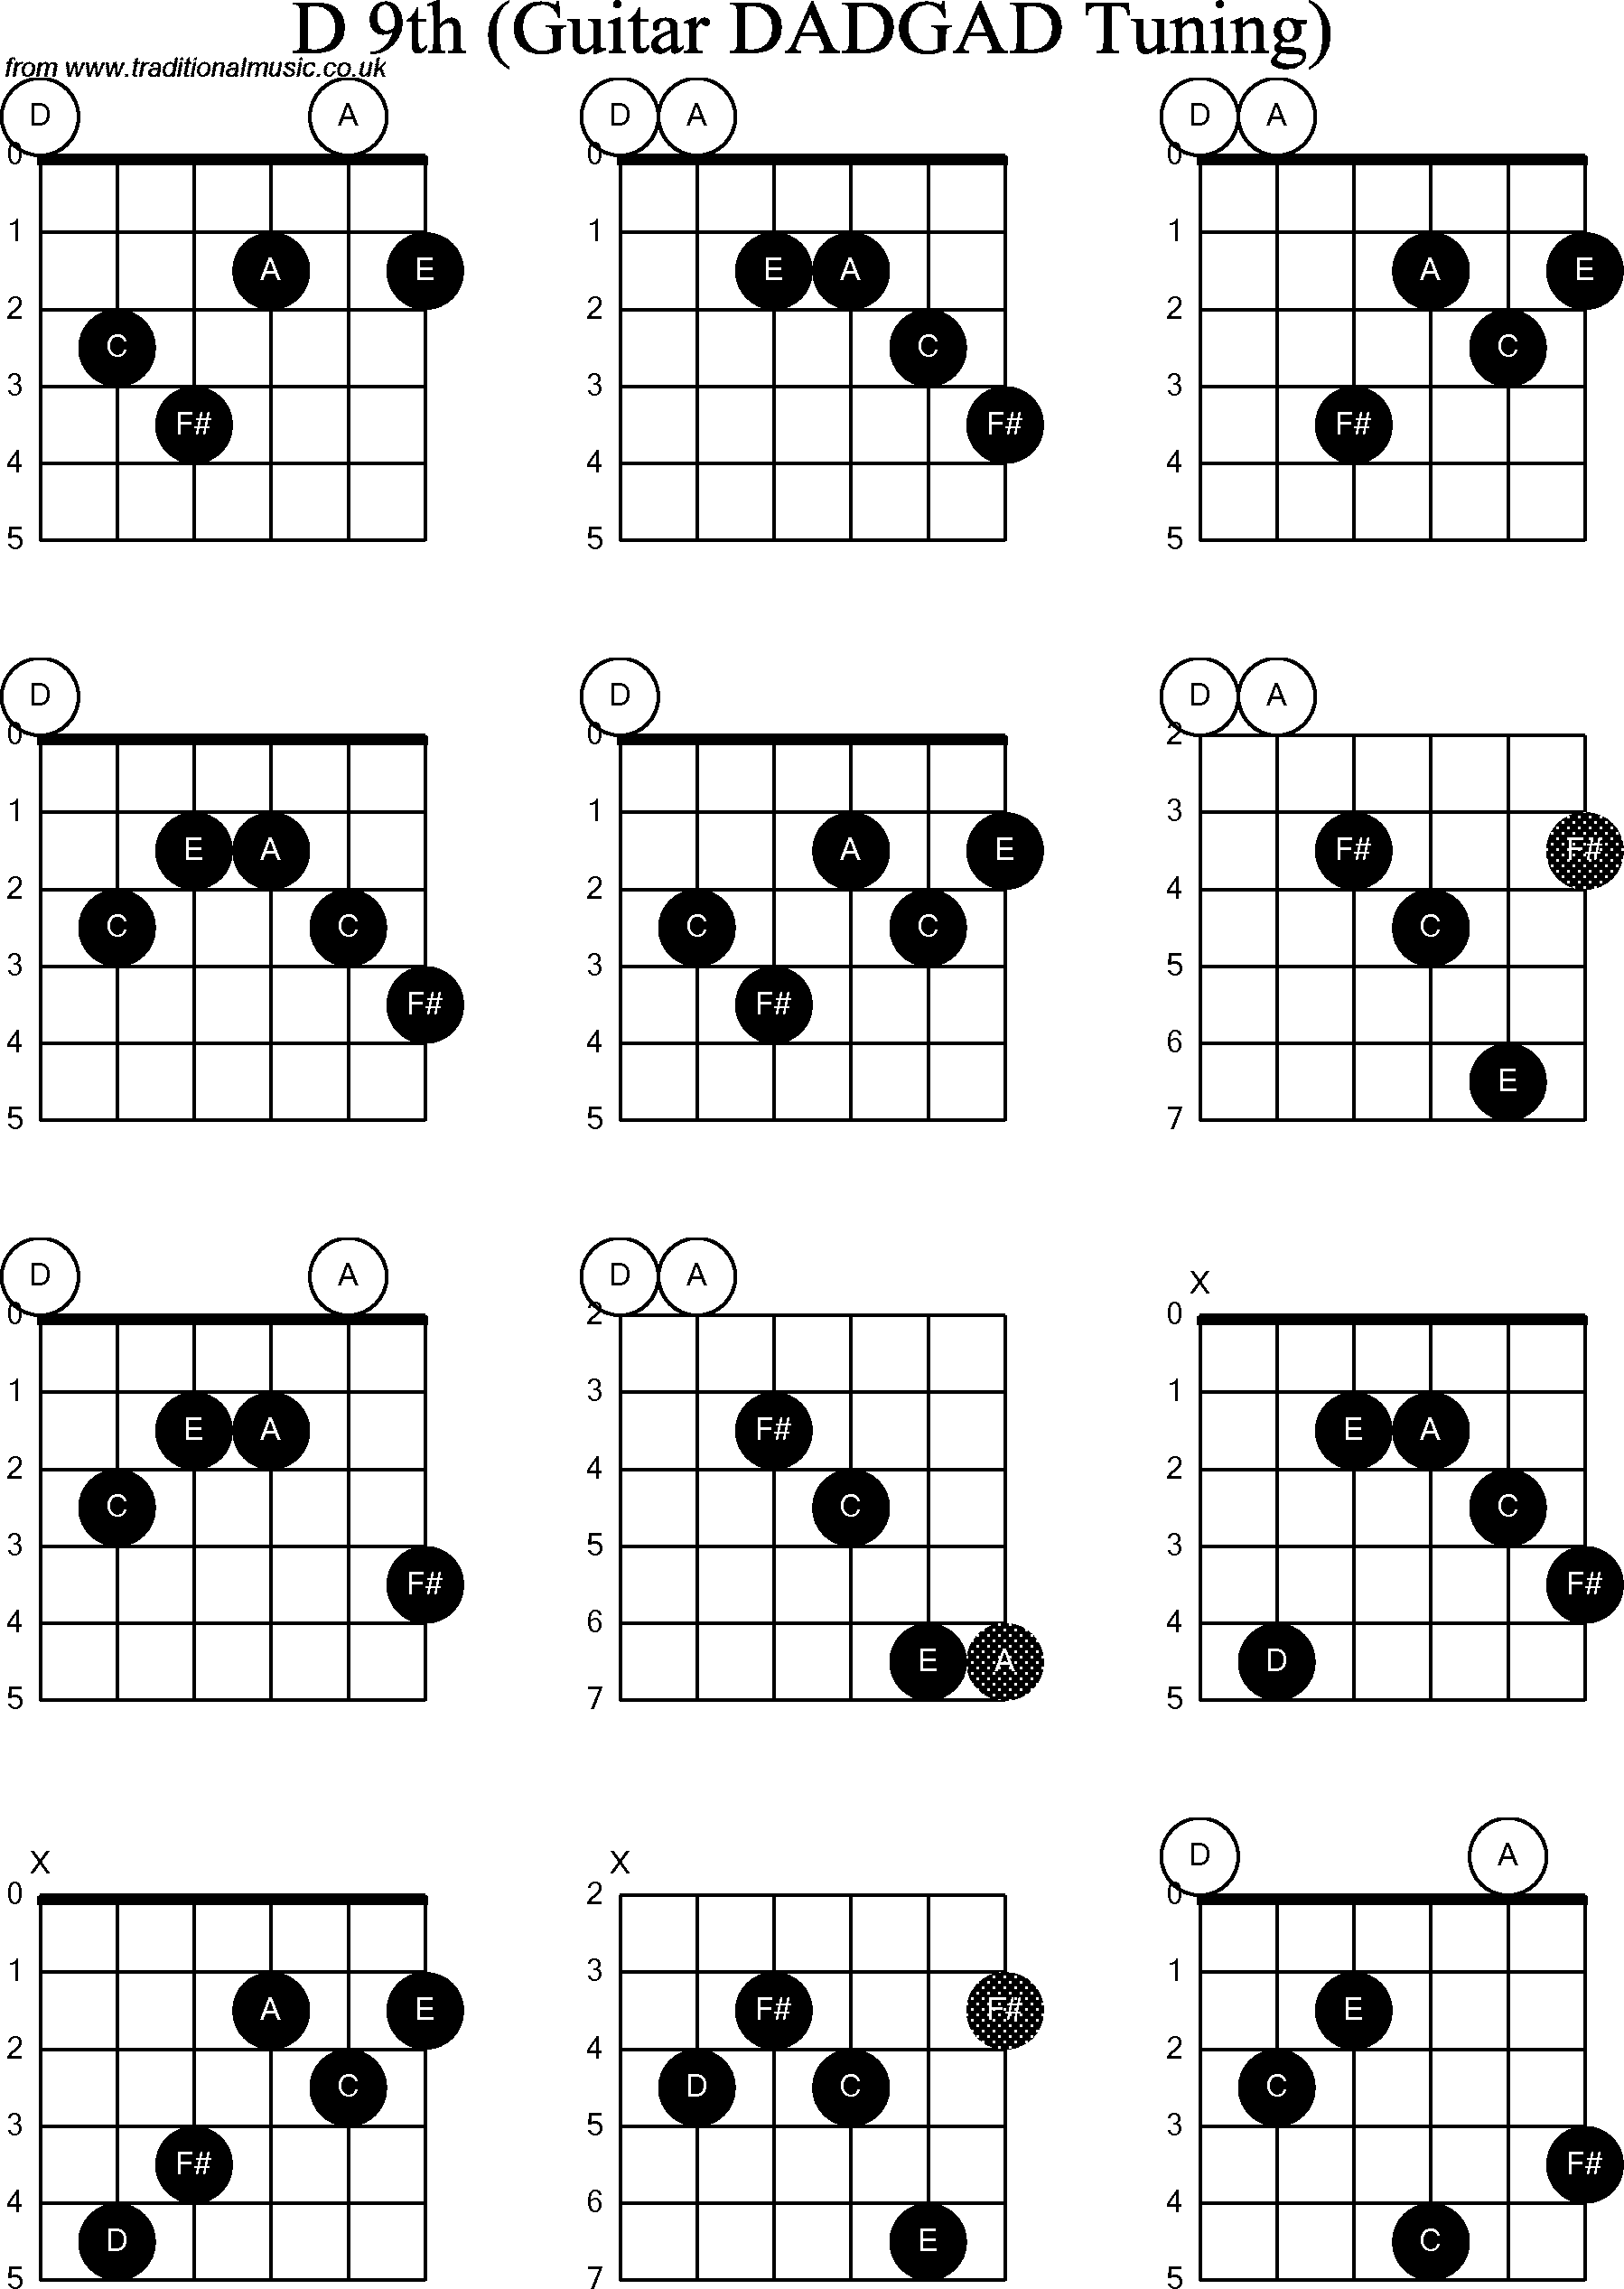 Chord Diagrams for D Modal Guitar(DADGAD), D9th